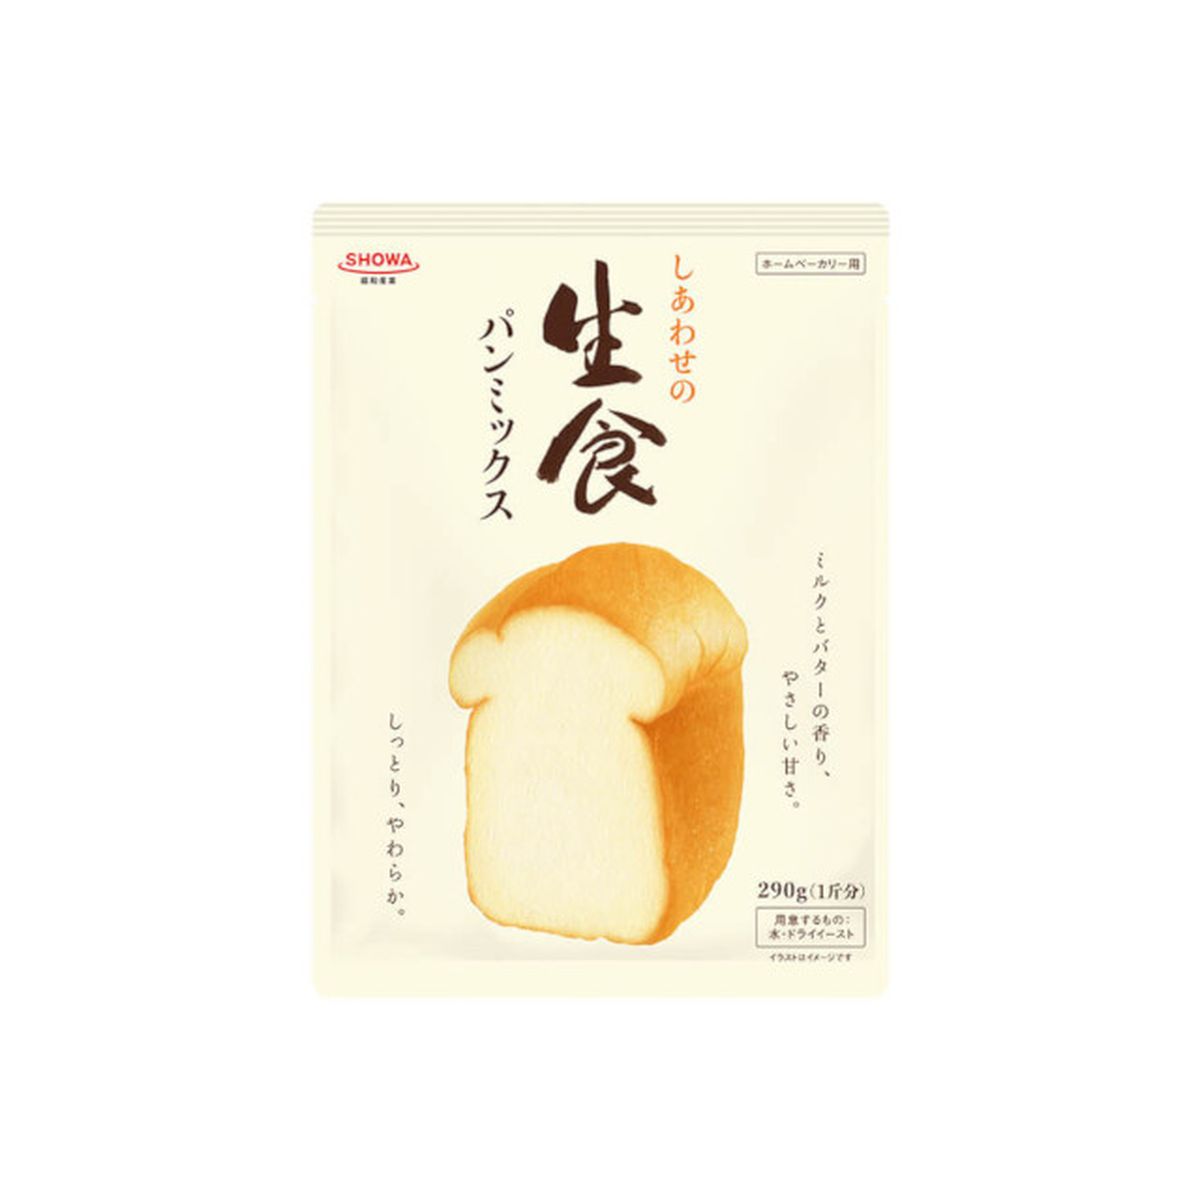 【送料無料 + 33】【8個入り】昭和産業 しあわせの生食パンミックス 290g